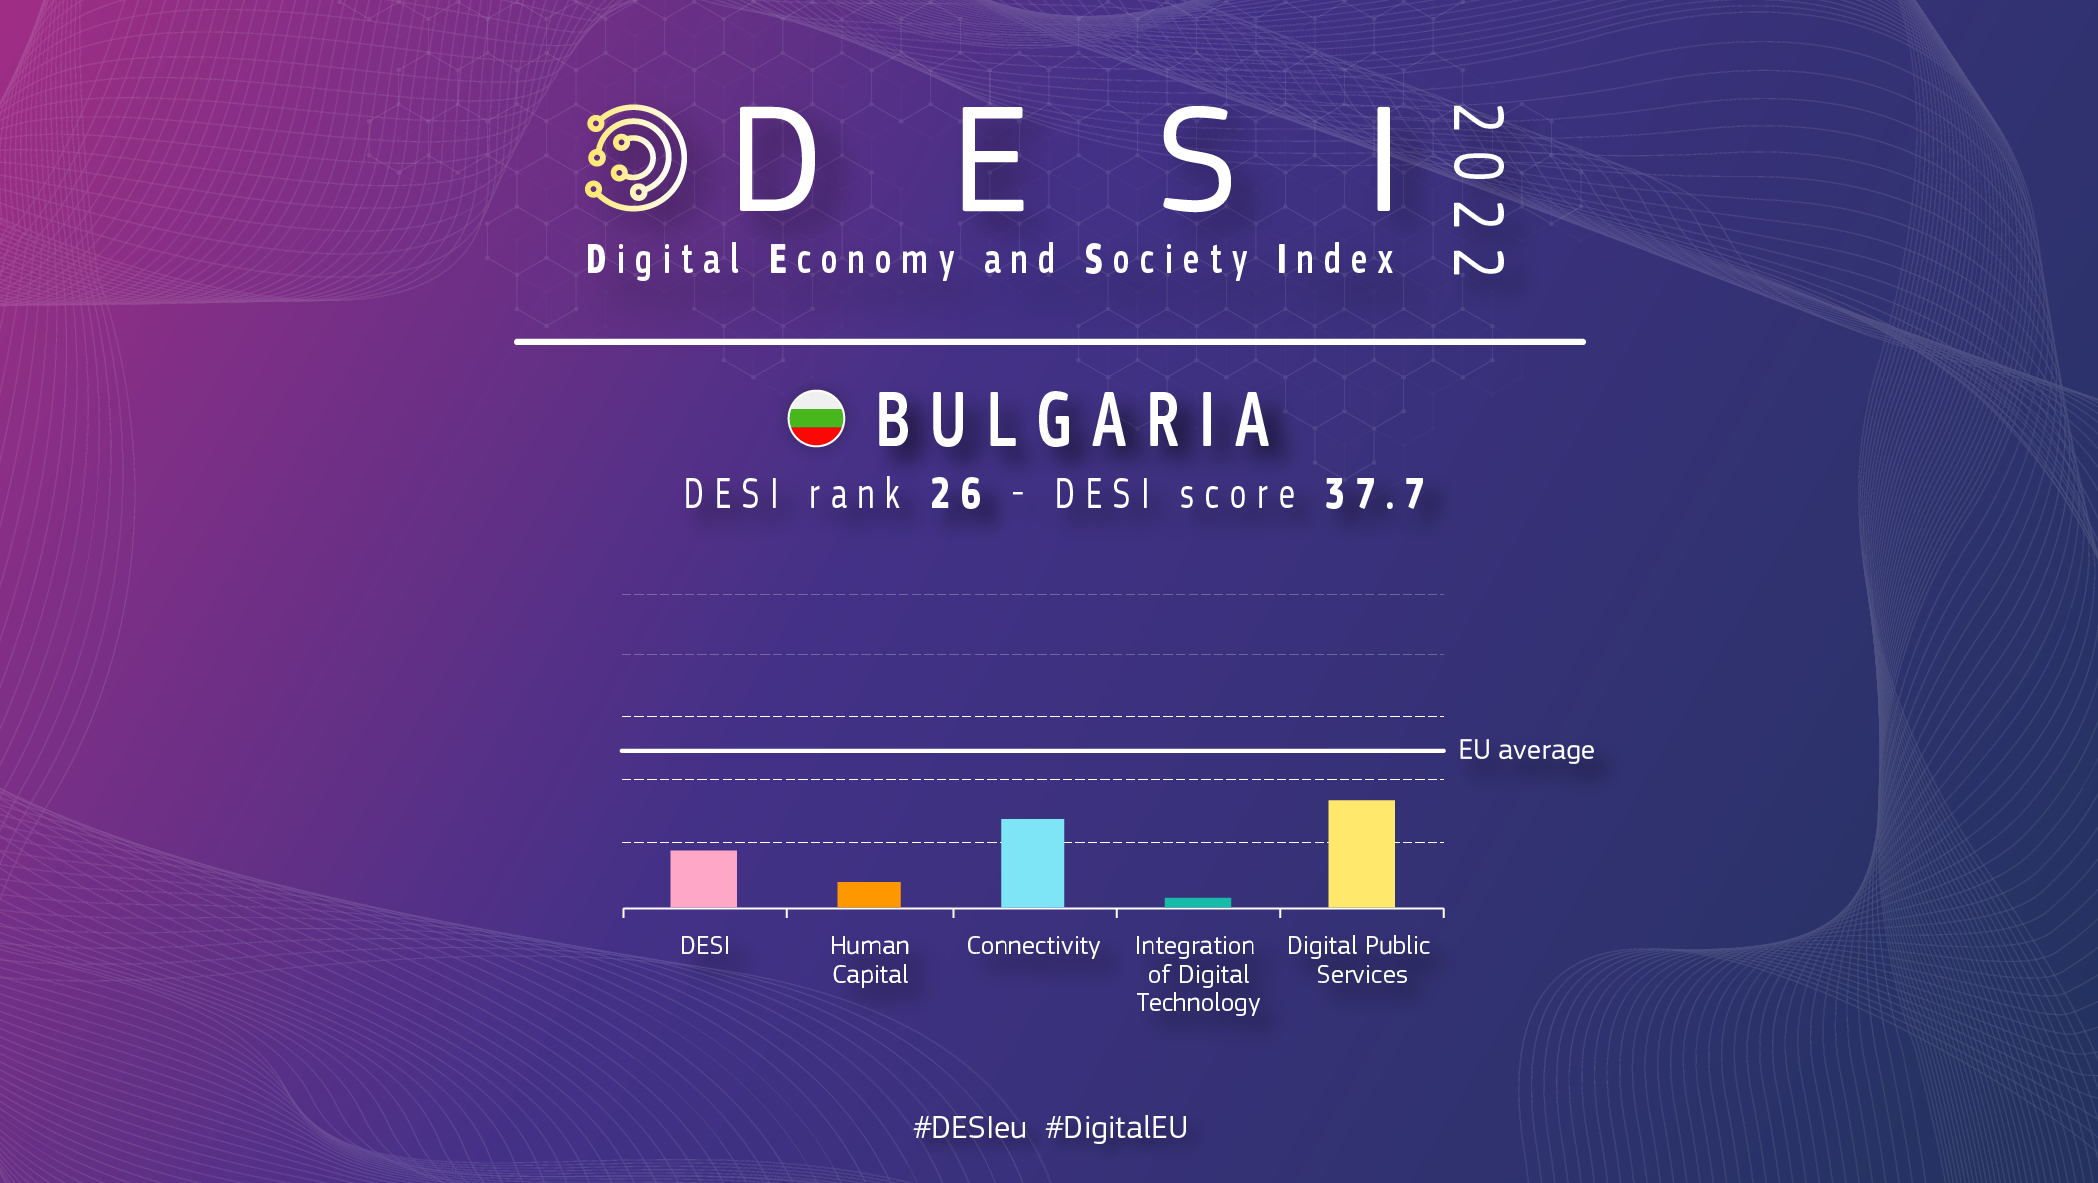 Bulgária grafikus áttekintése DESI-ben 26-os helyezéssel és 37,7 ponttal